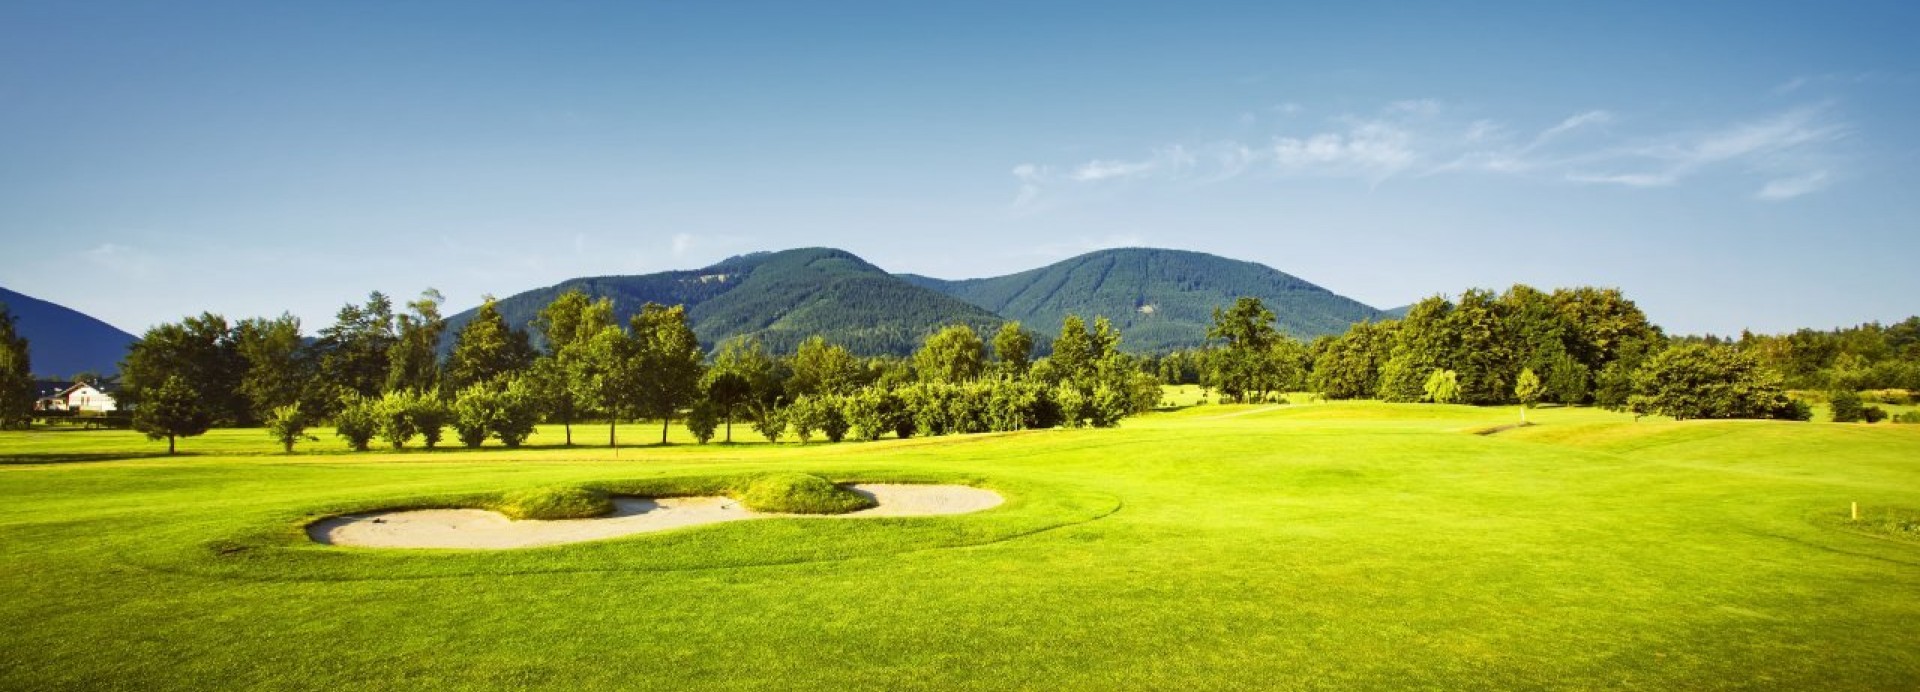 Prosper Golf Resort Čeladná –  The New Course  | Golfové zájezdy, golfová dovolená, luxusní golf